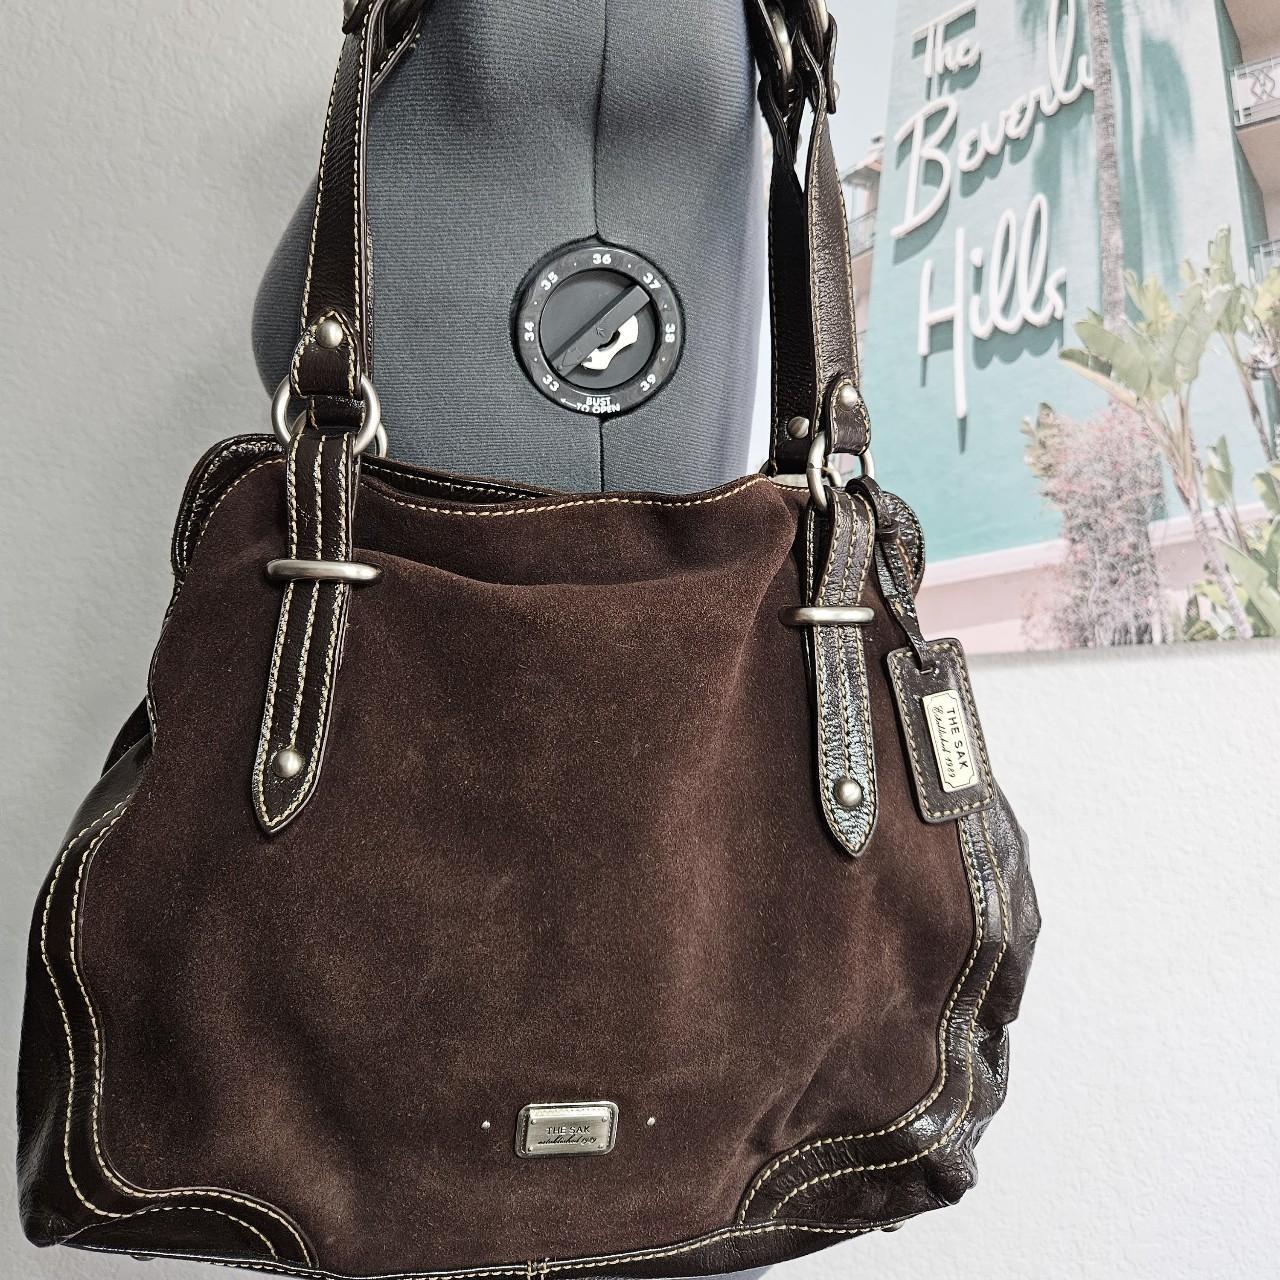 THE SAK Pink Label Pebbled Leather Shoulder Bag Purse Stitching Tassels  Brown | eBay